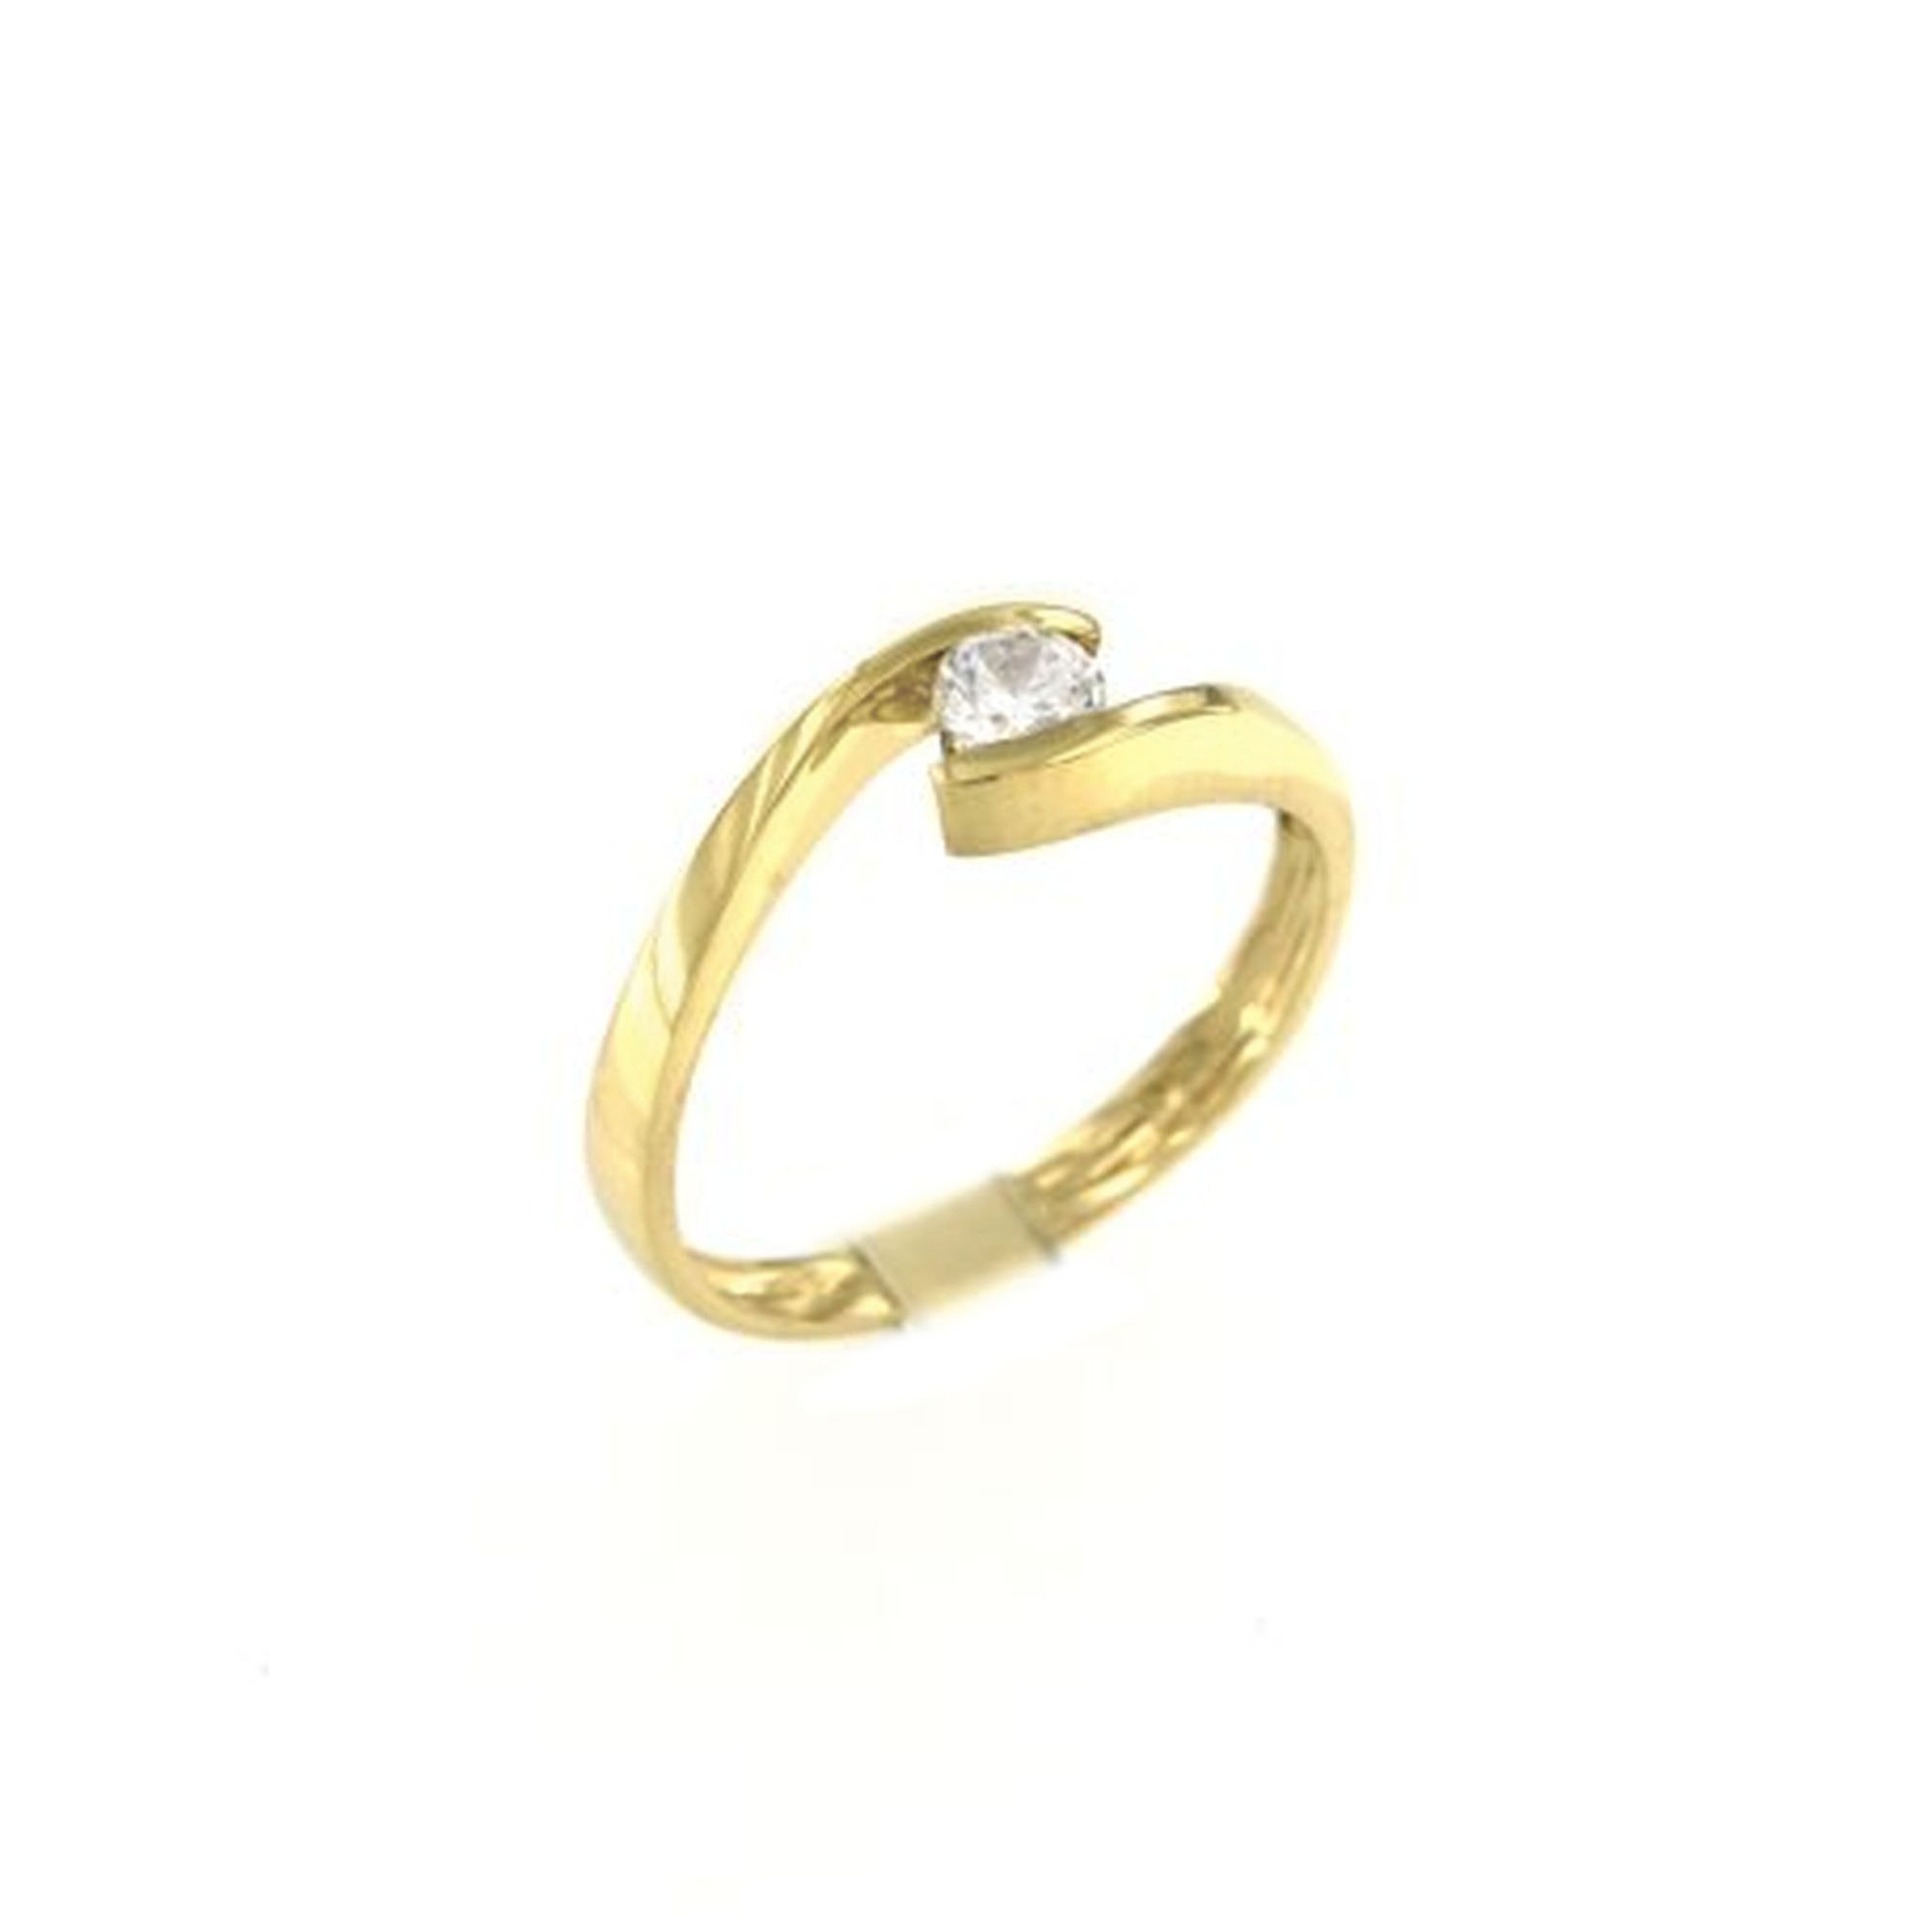 MOISS Moiss prsten ze žlutého zlata ANELISE RA000244 Velikost 56 mm RA000245 + doprava ZDARMA